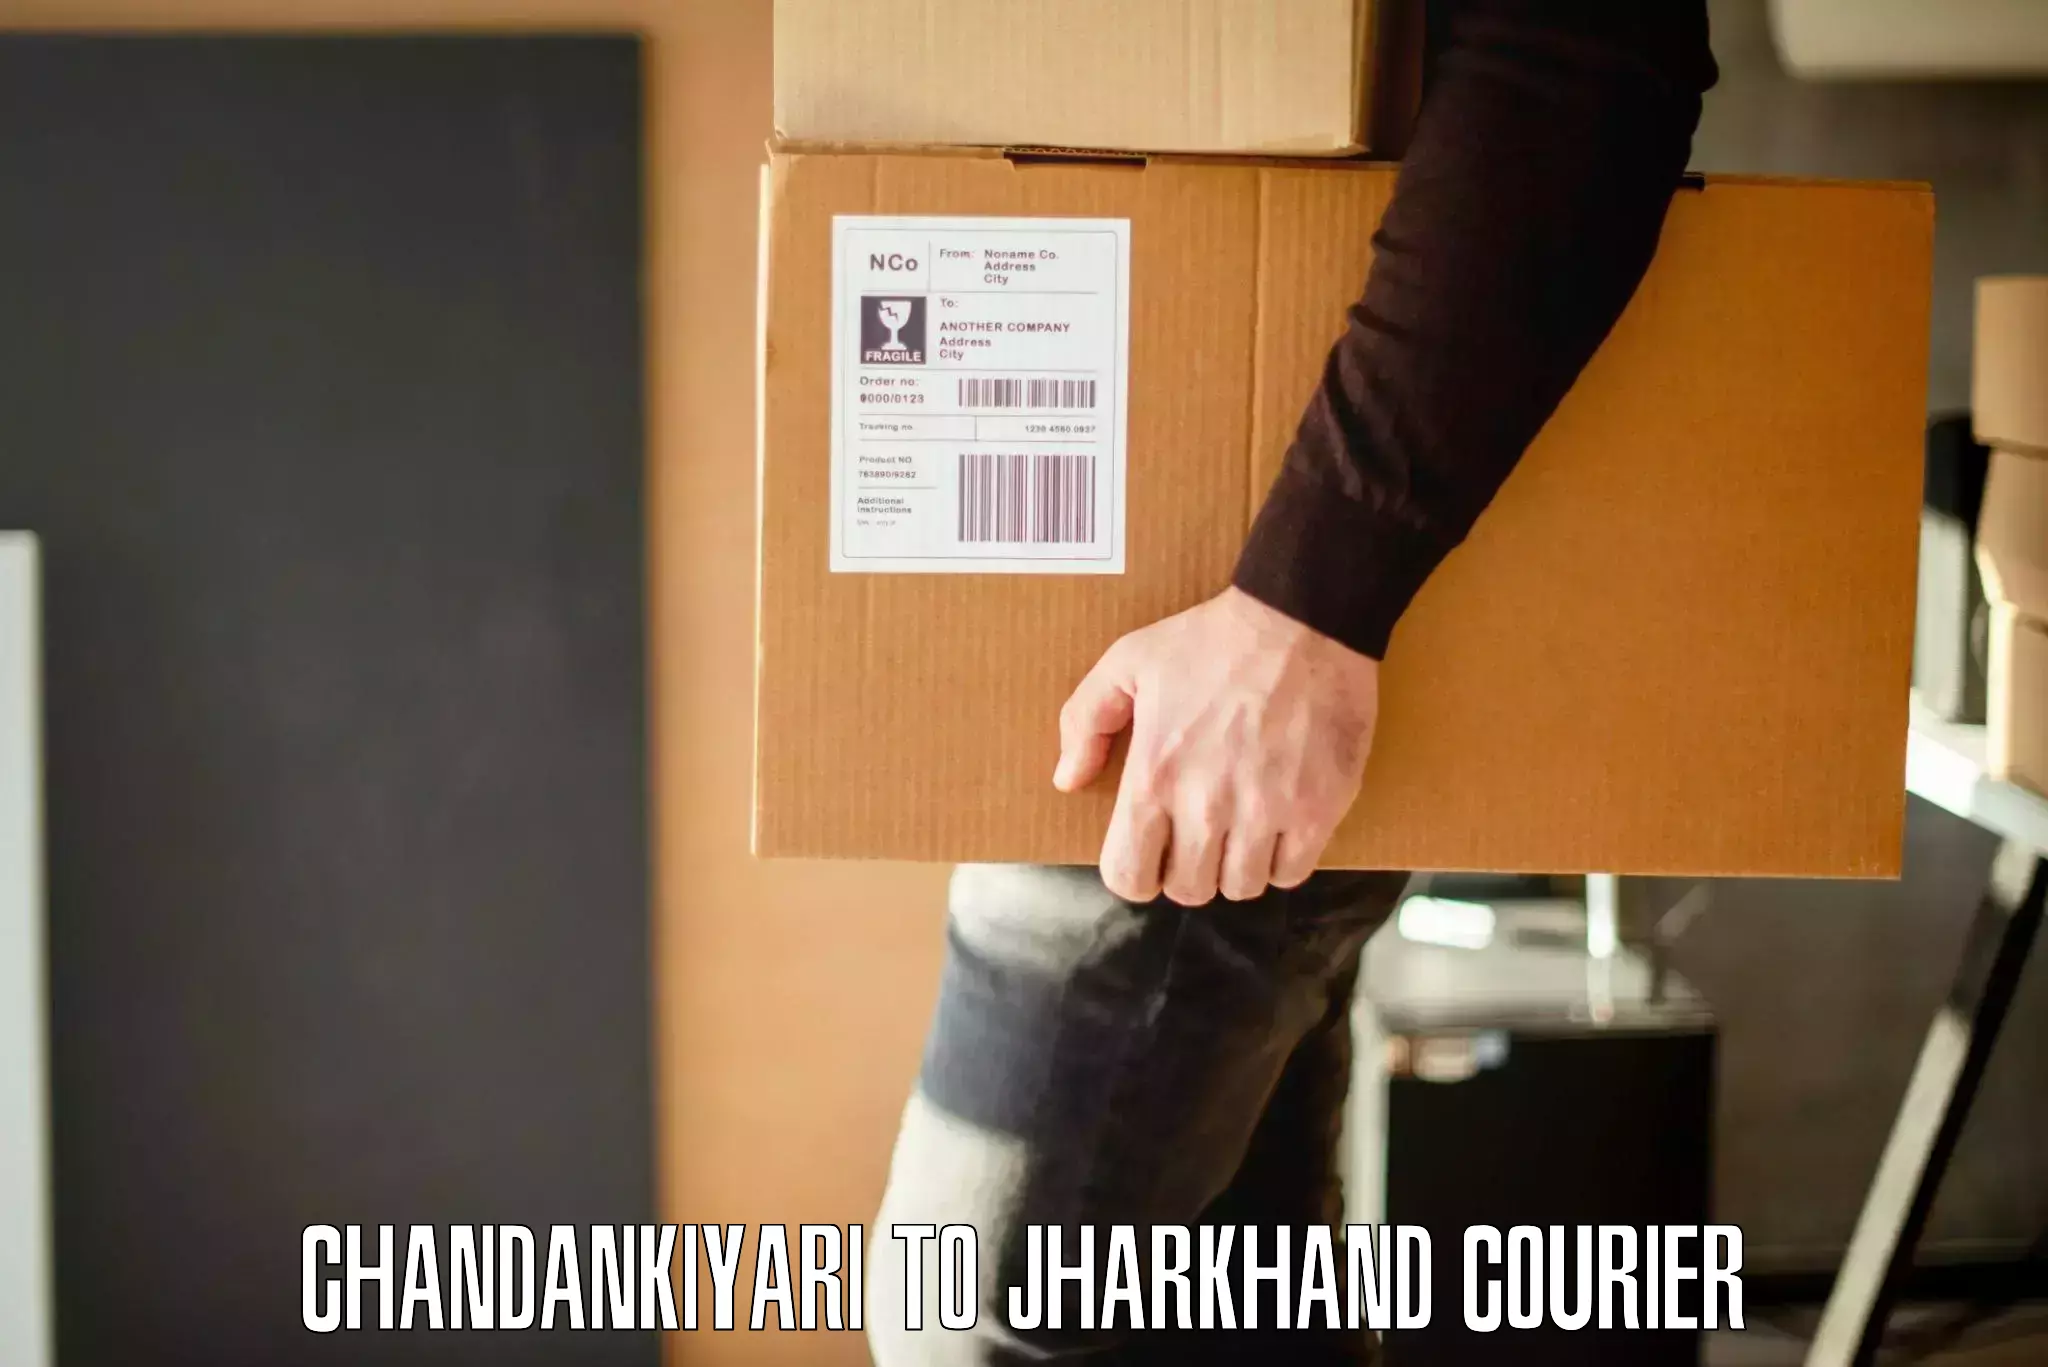 Furniture transport professionals Chandankiyari to Koderma